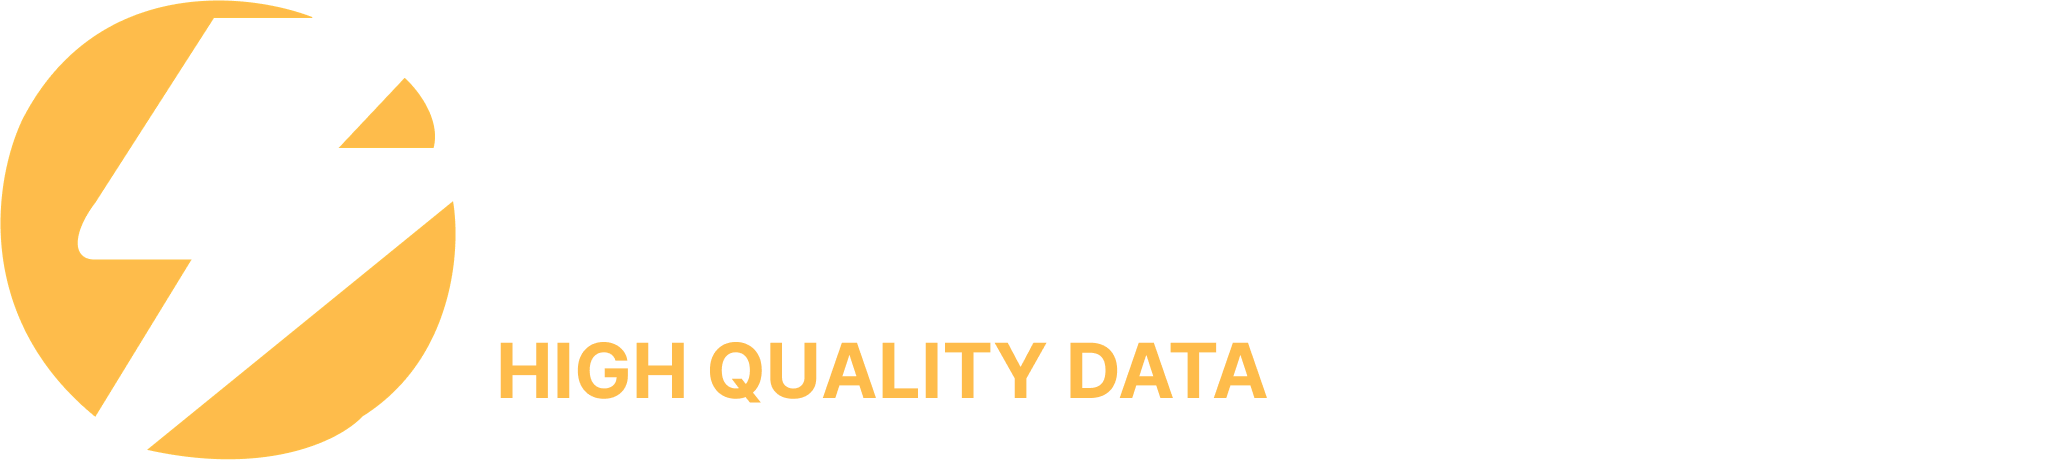 Data Staxx - Online Digital Services